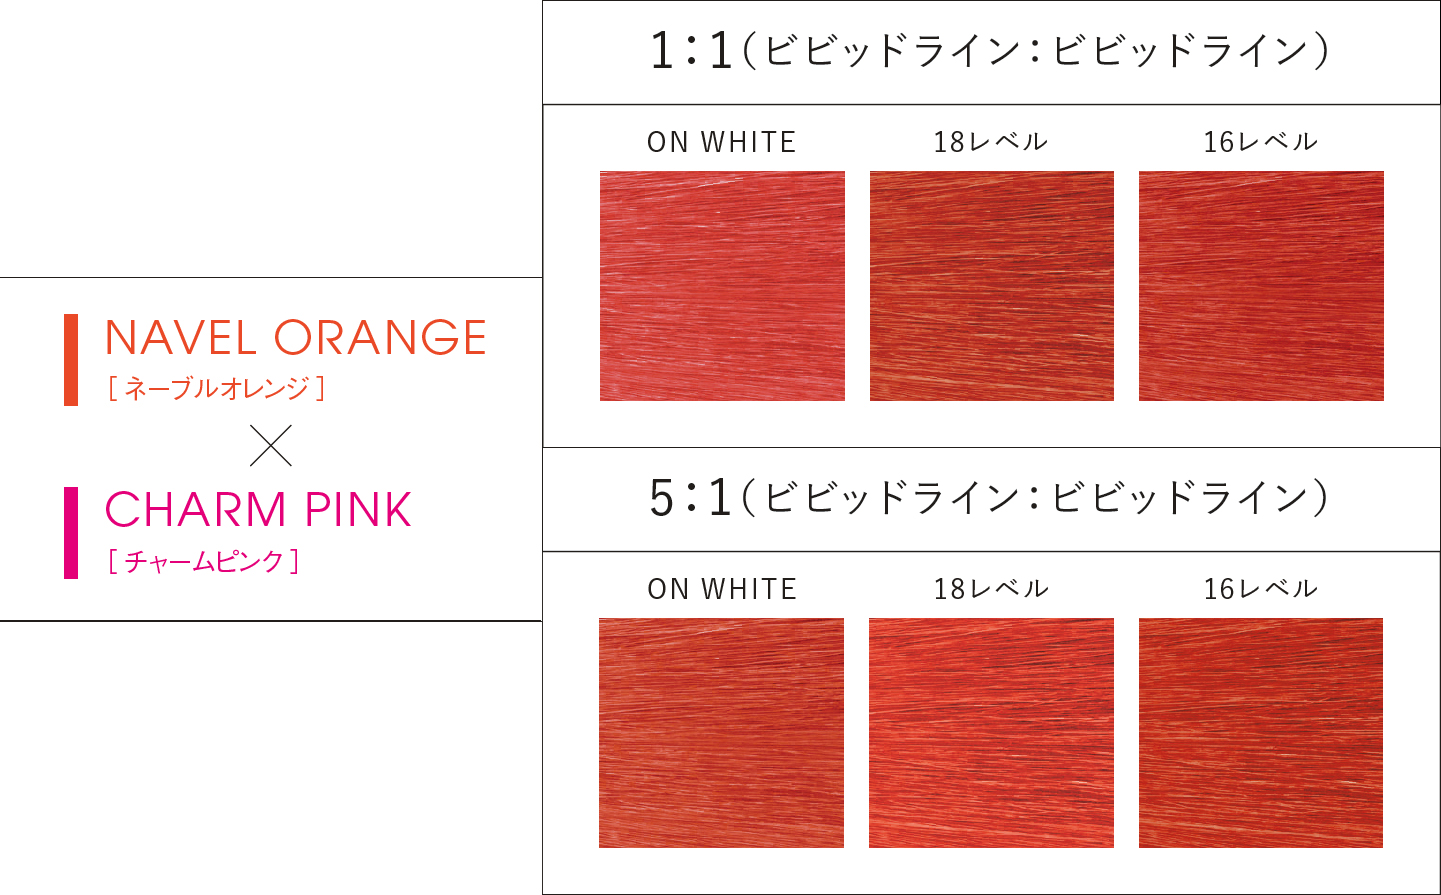 NAVEL ORANGE(ネーブルオレンジ) × CHARM PINK(チャームピンク)